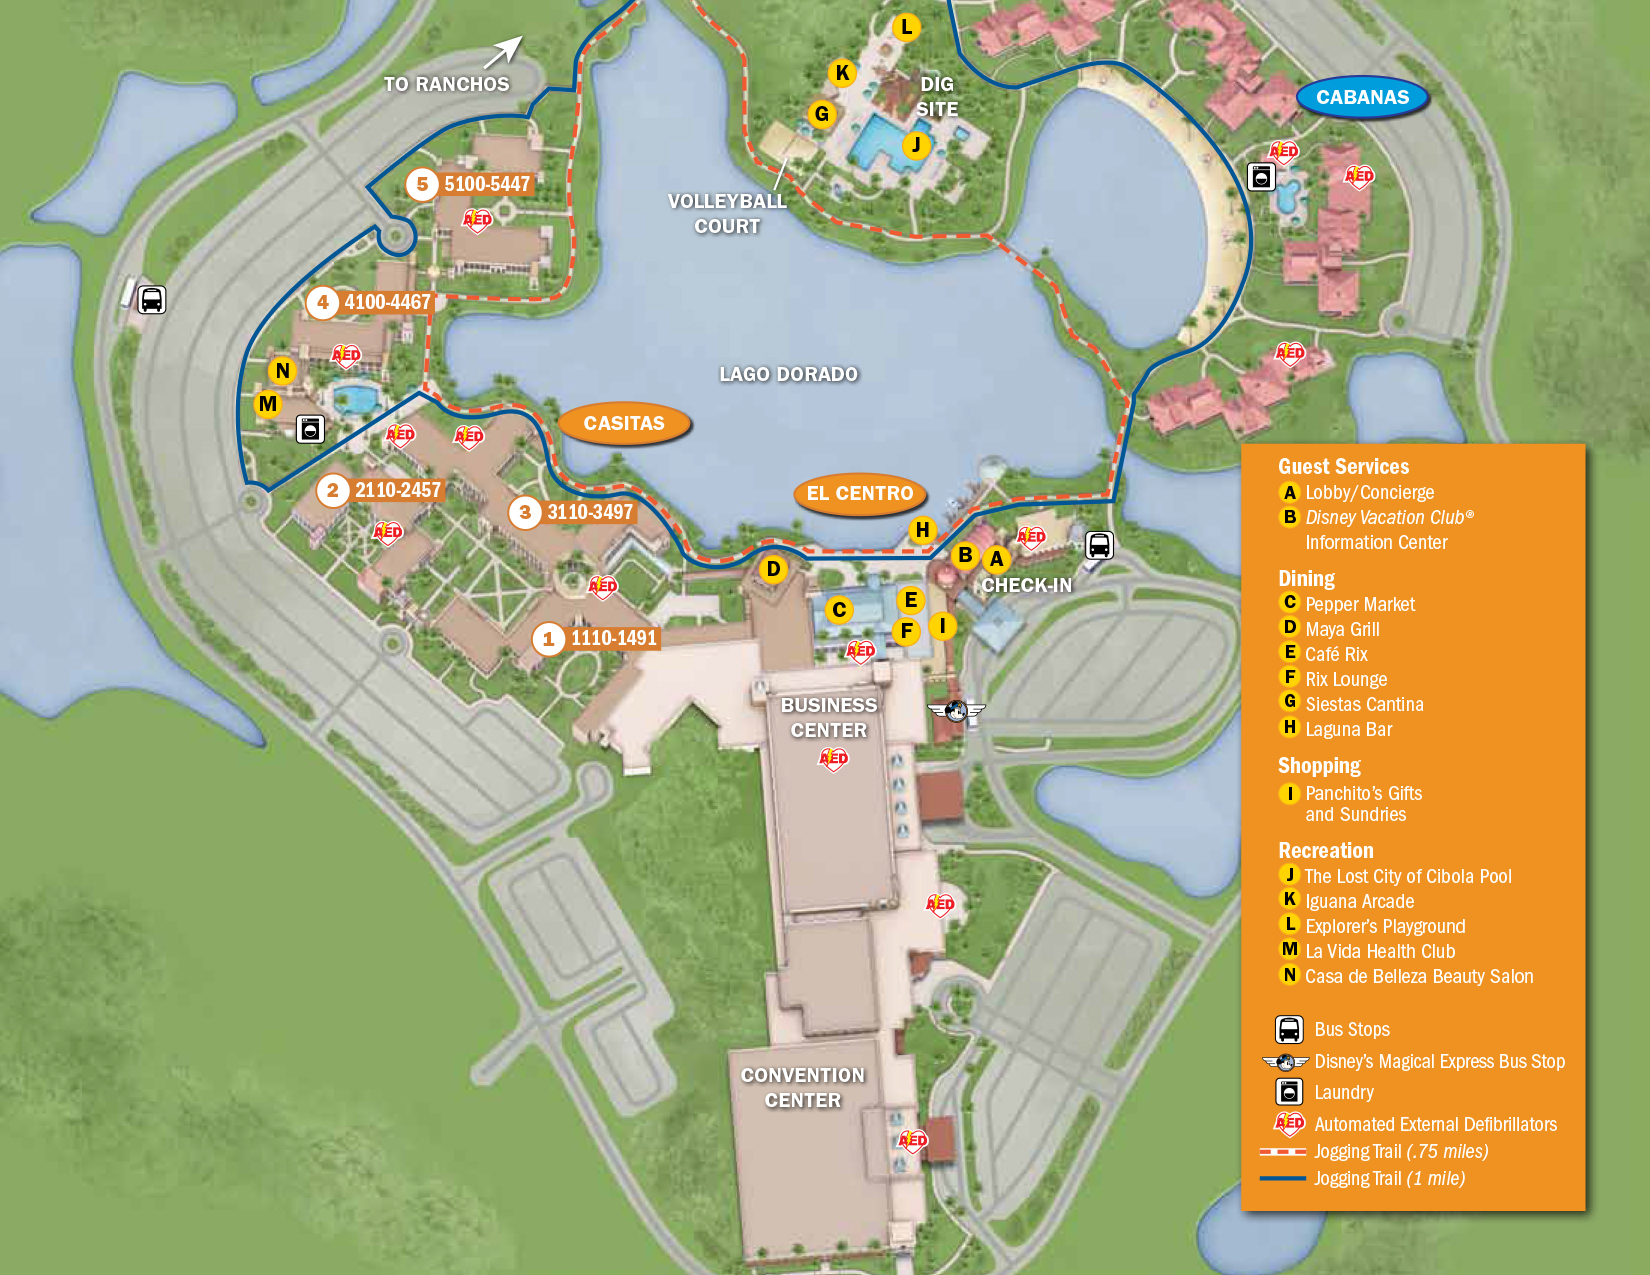 Springs coronado map resort disney walt disneys maps hotels kennythepirate guide tweet